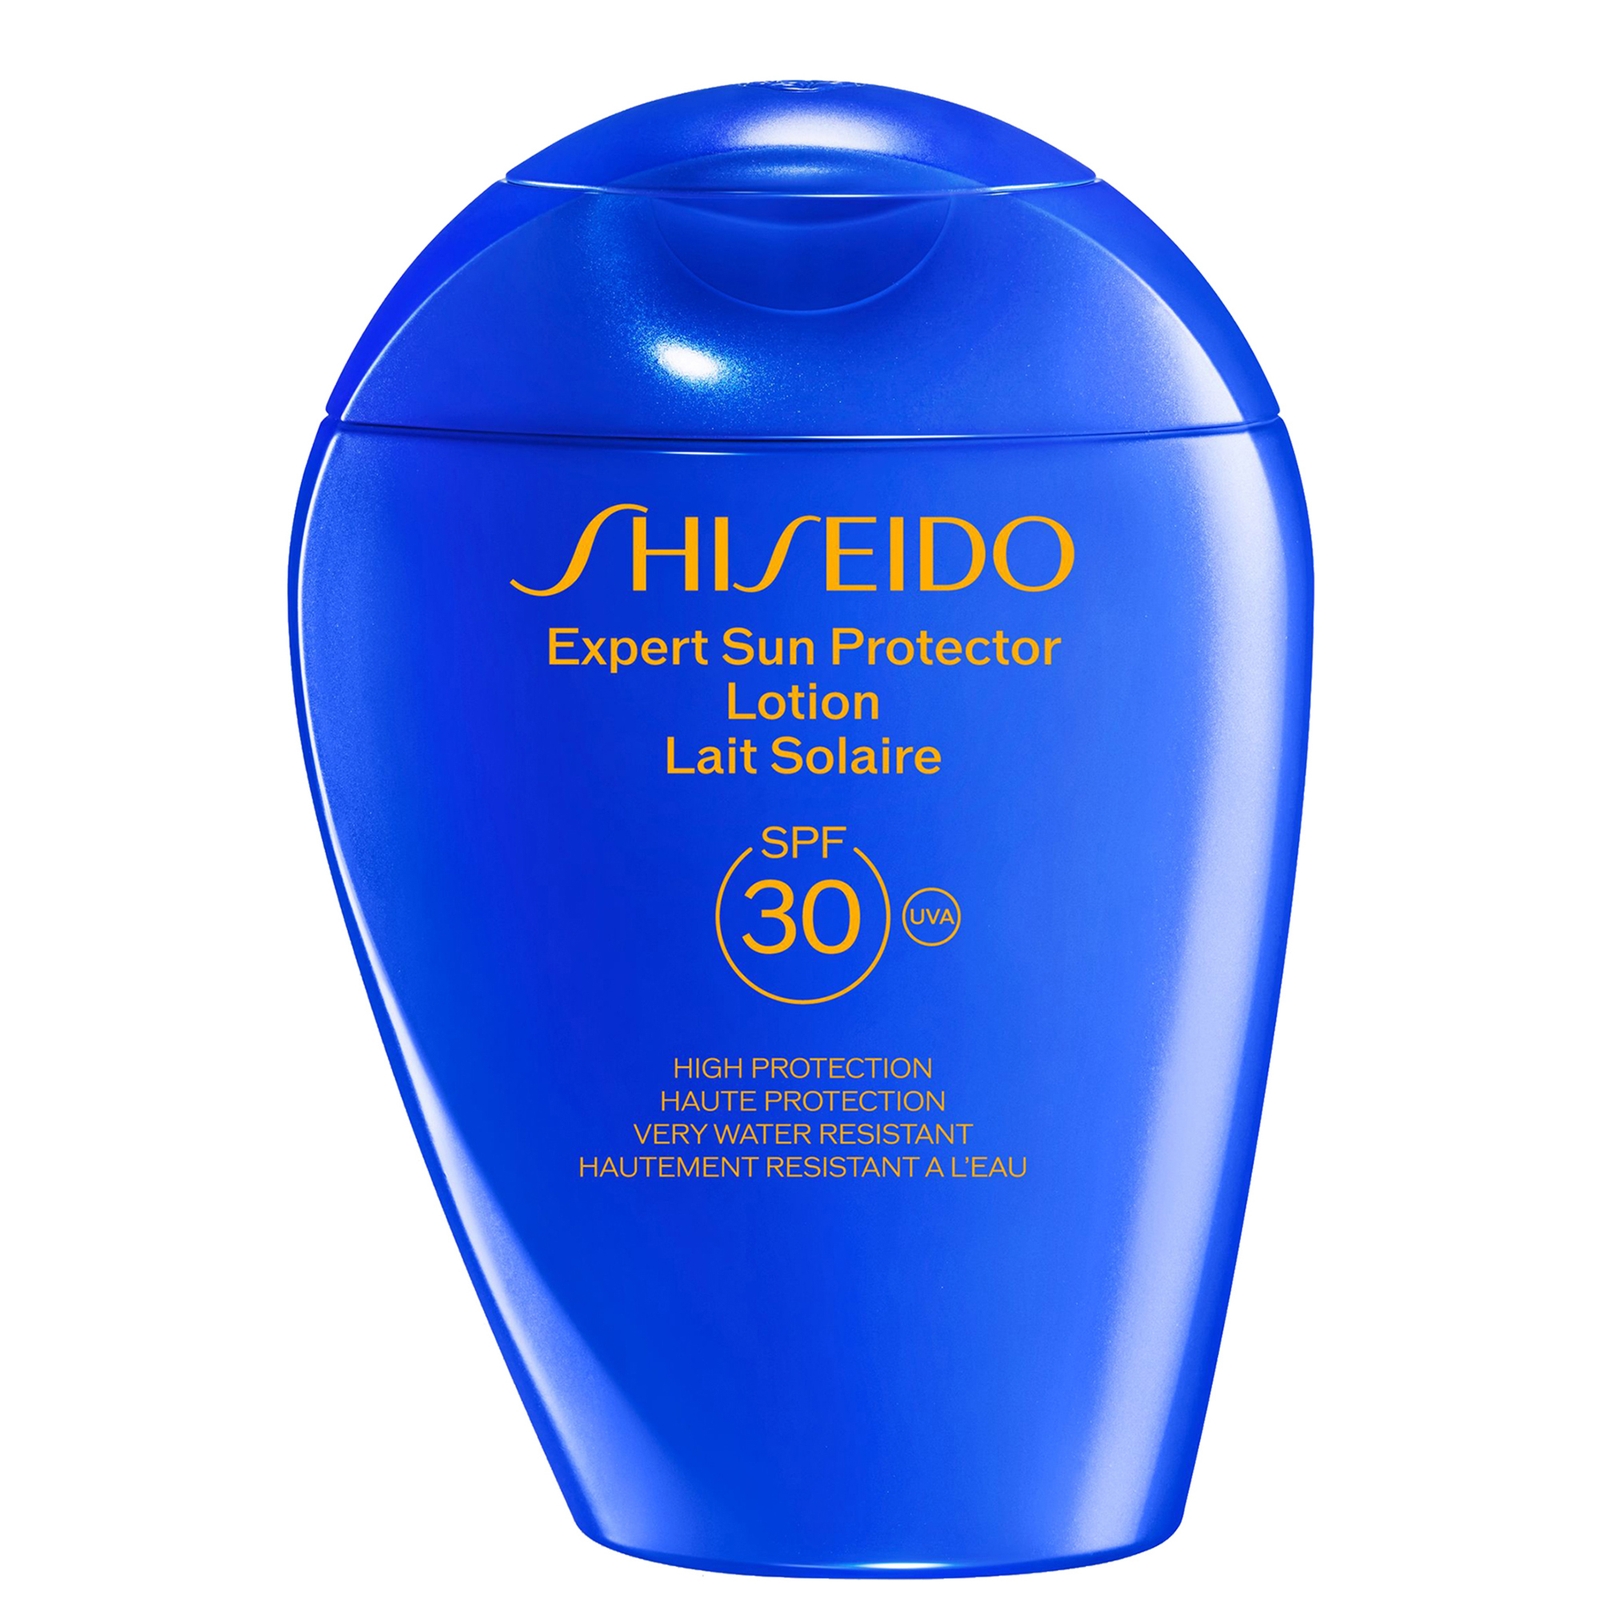 Shiseido Expert Sun Protector Face and Body Lotion SPF30 150ml von Shiseido